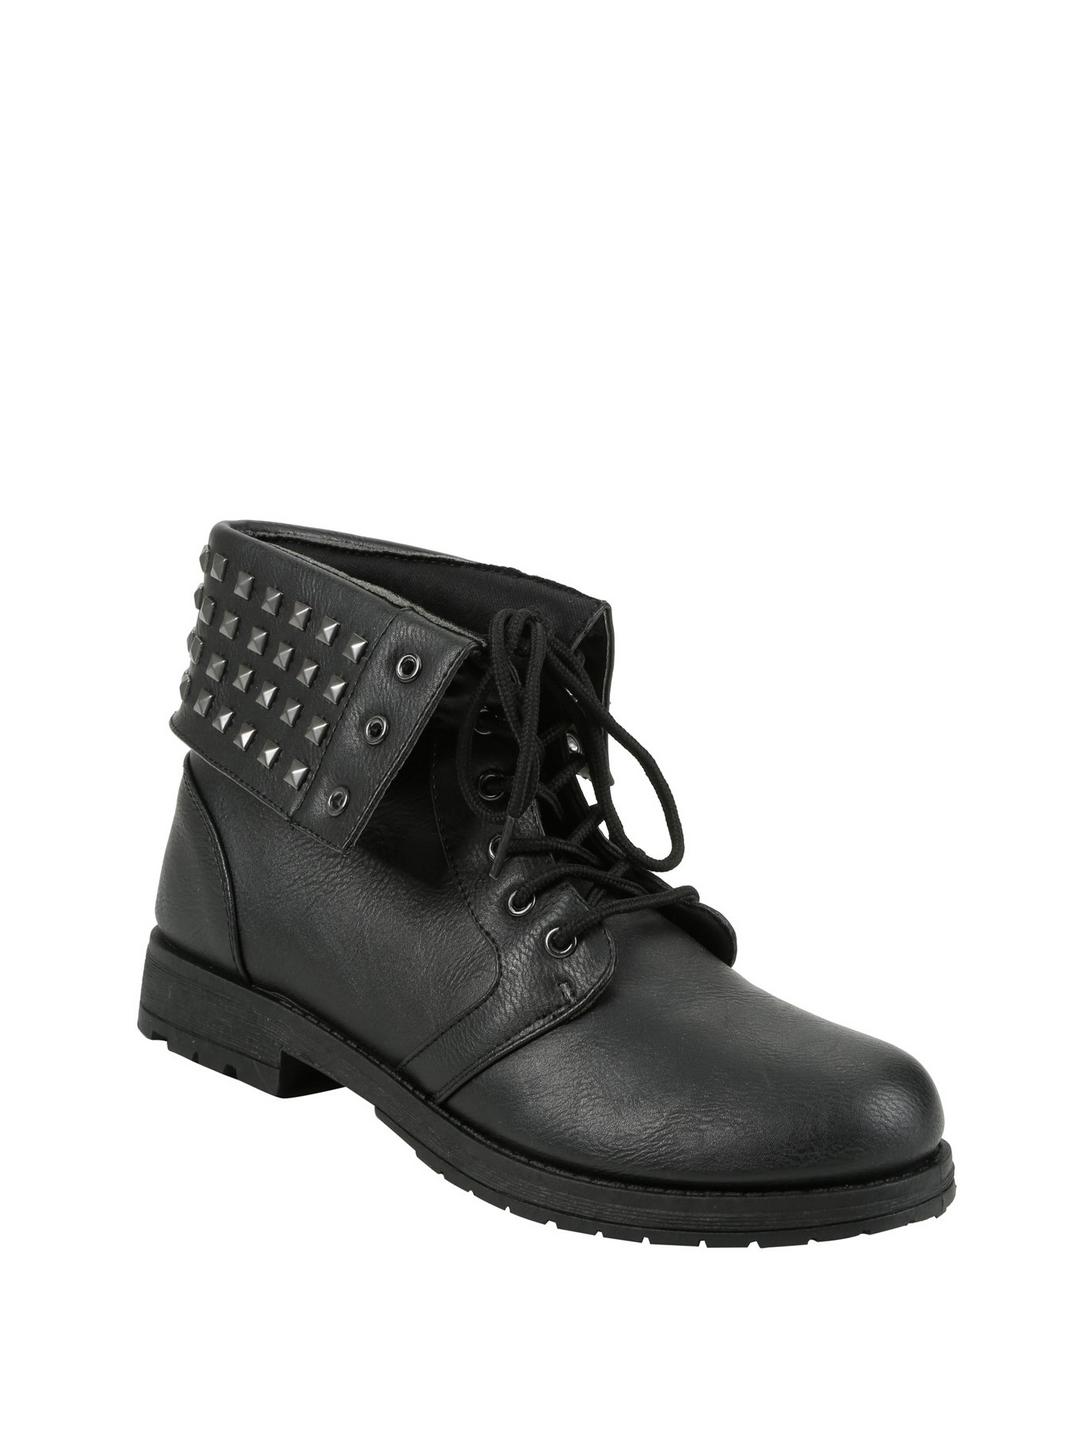 Black Studded Fold-Over Ankle Boots, BLACK, hi-res